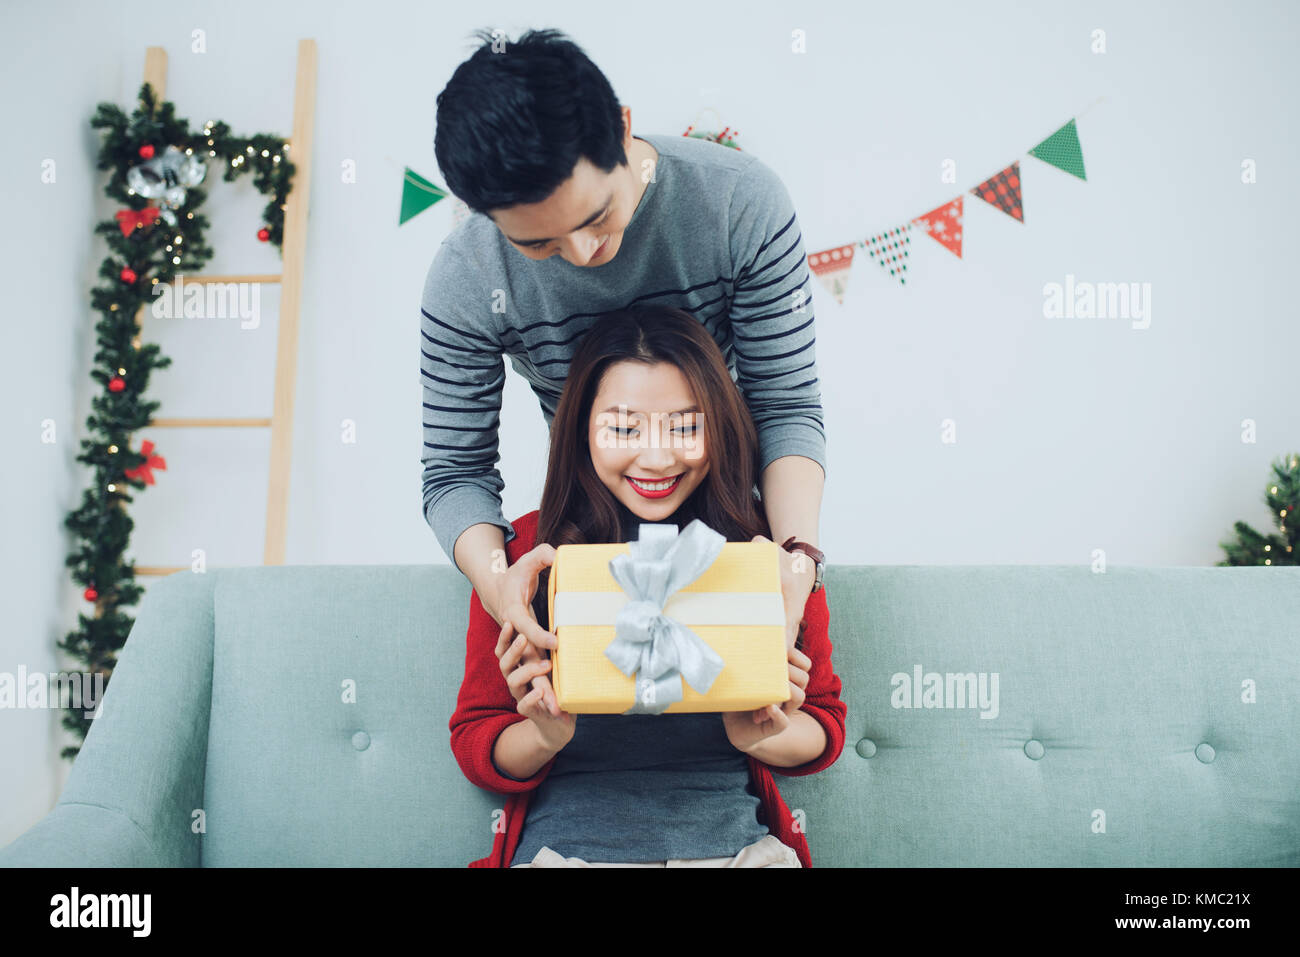 Weihnachten Asiatische Paar Ein Schoner Mann Ihrer Freundin Frau Ein Geschenk Zu Hause Feiern Das Neue Jahr Leute Stockfotografie Alamy